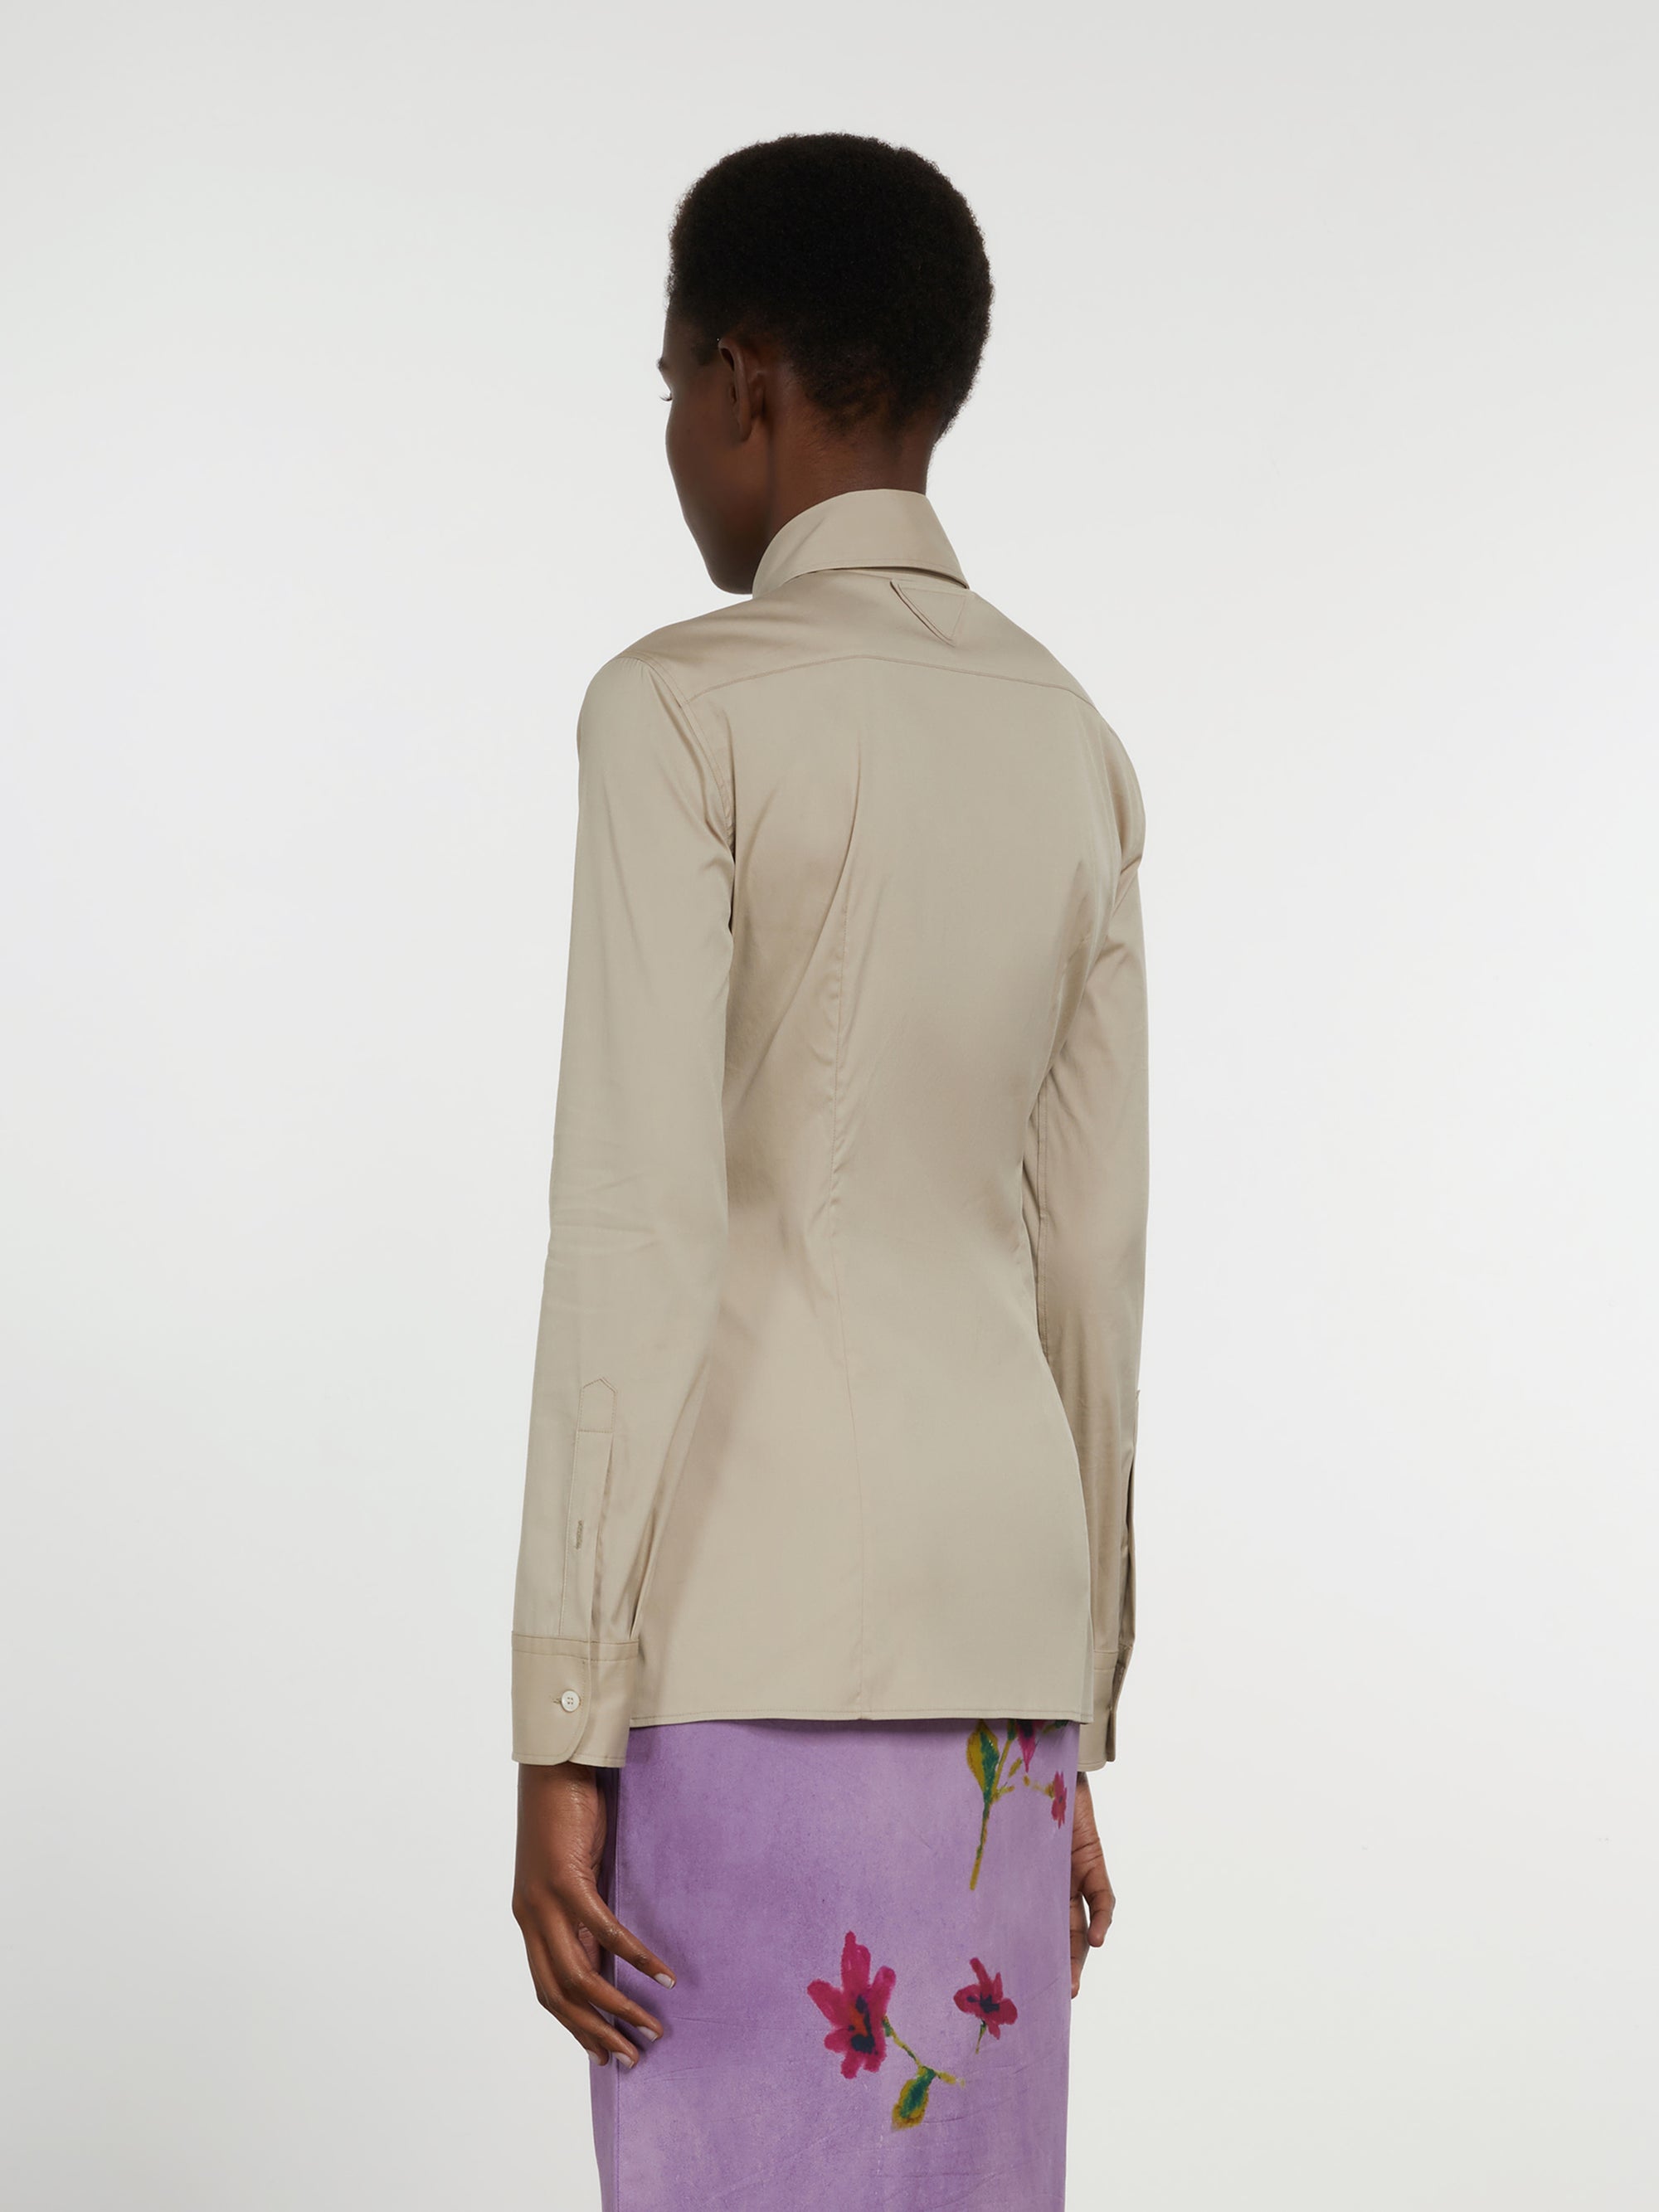 Prada - Women’s Stretch Poplin Shirt - (Limestone) view 3